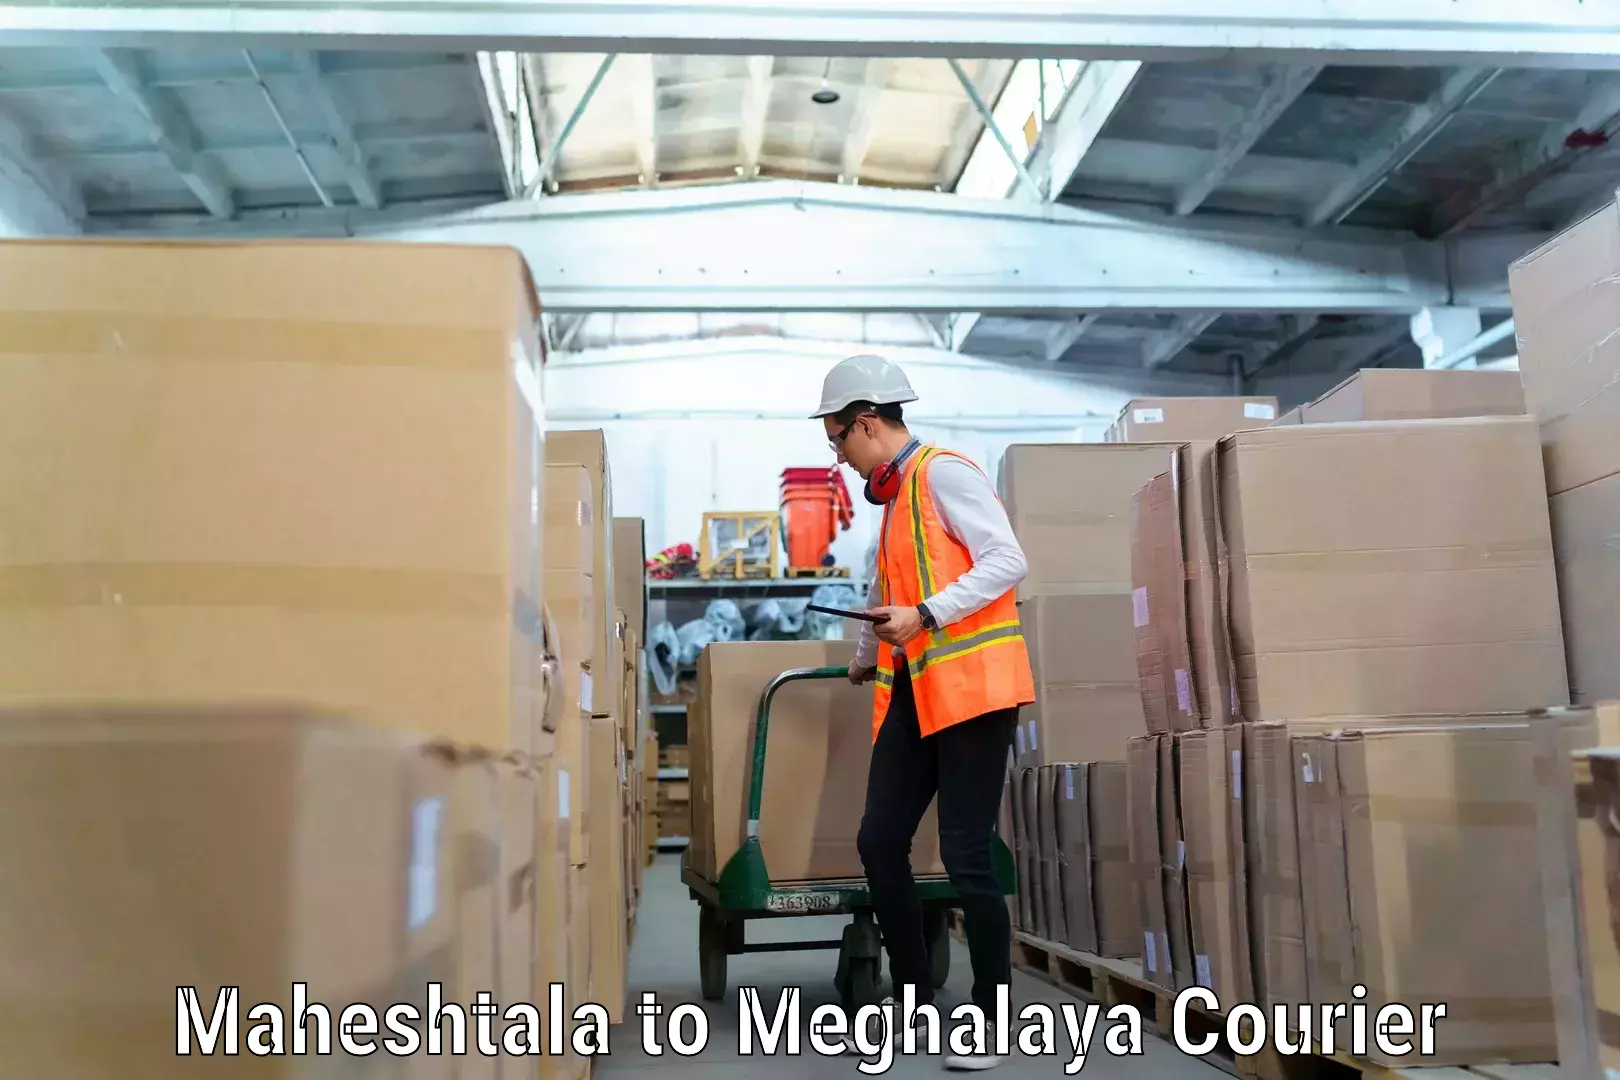 Furniture moving services Maheshtala to Meghalaya